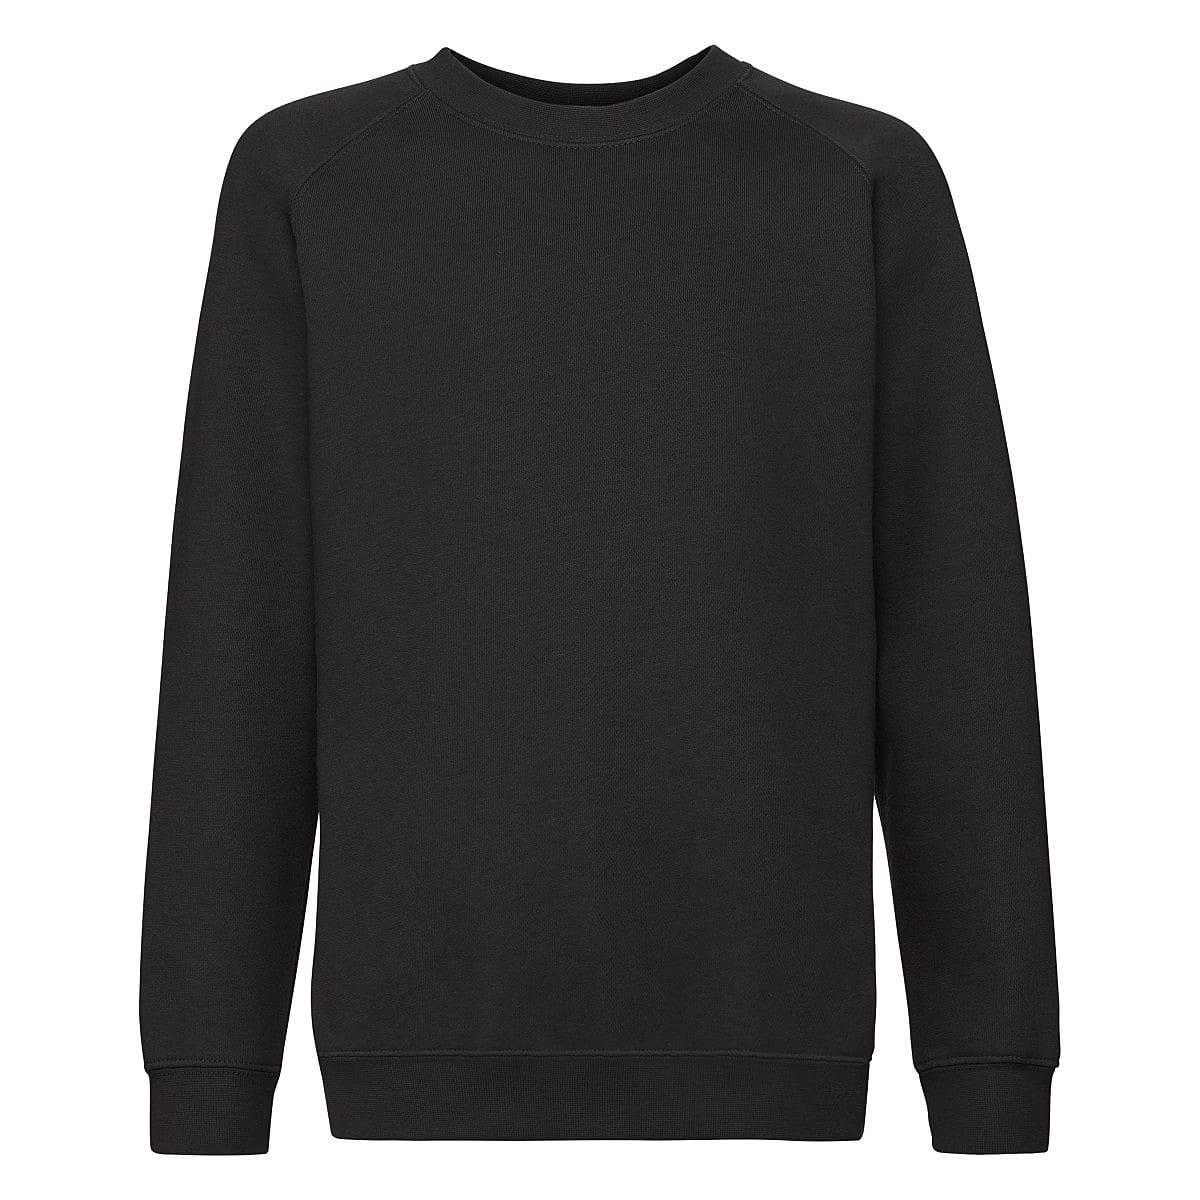 Fruit Of The Loom Childrens Premium Raglan Sleeve Sweatshirt in Black (Product Code: 62033)